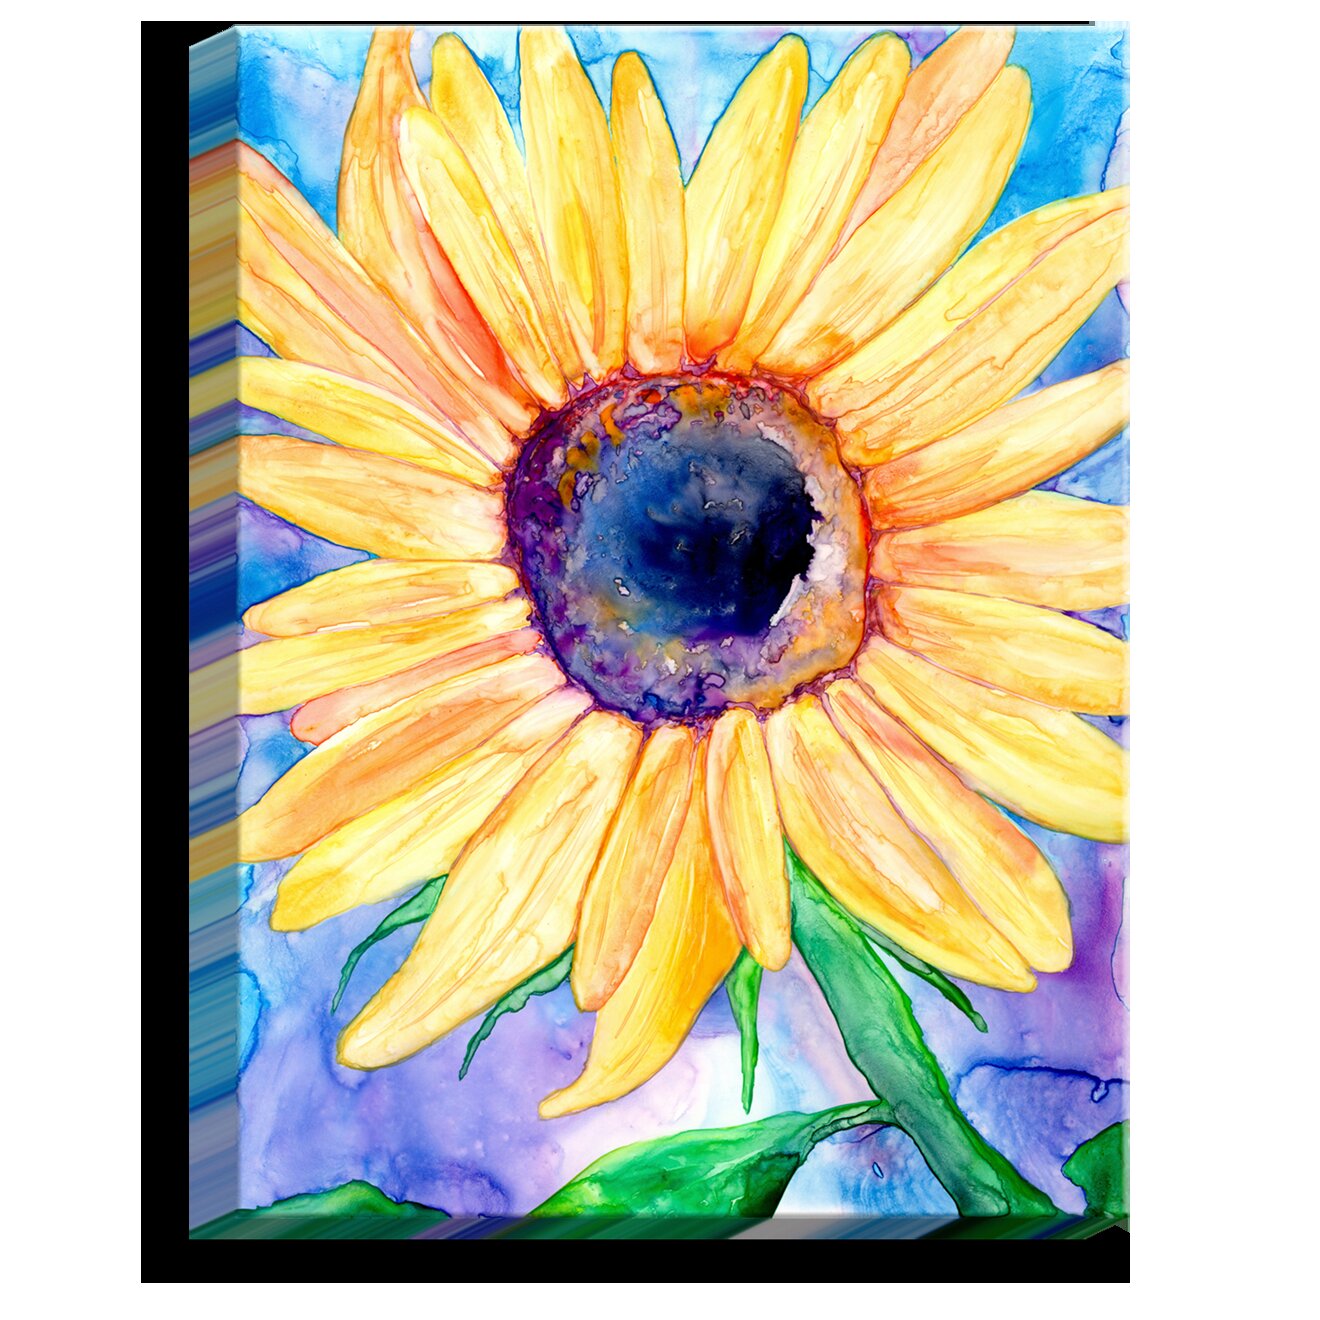 https://assets.wfcdn.com/im/49390253/compr-r85/3523/35237904/sunflower-on-canvas-by-brazen-design-studio-print.jpg